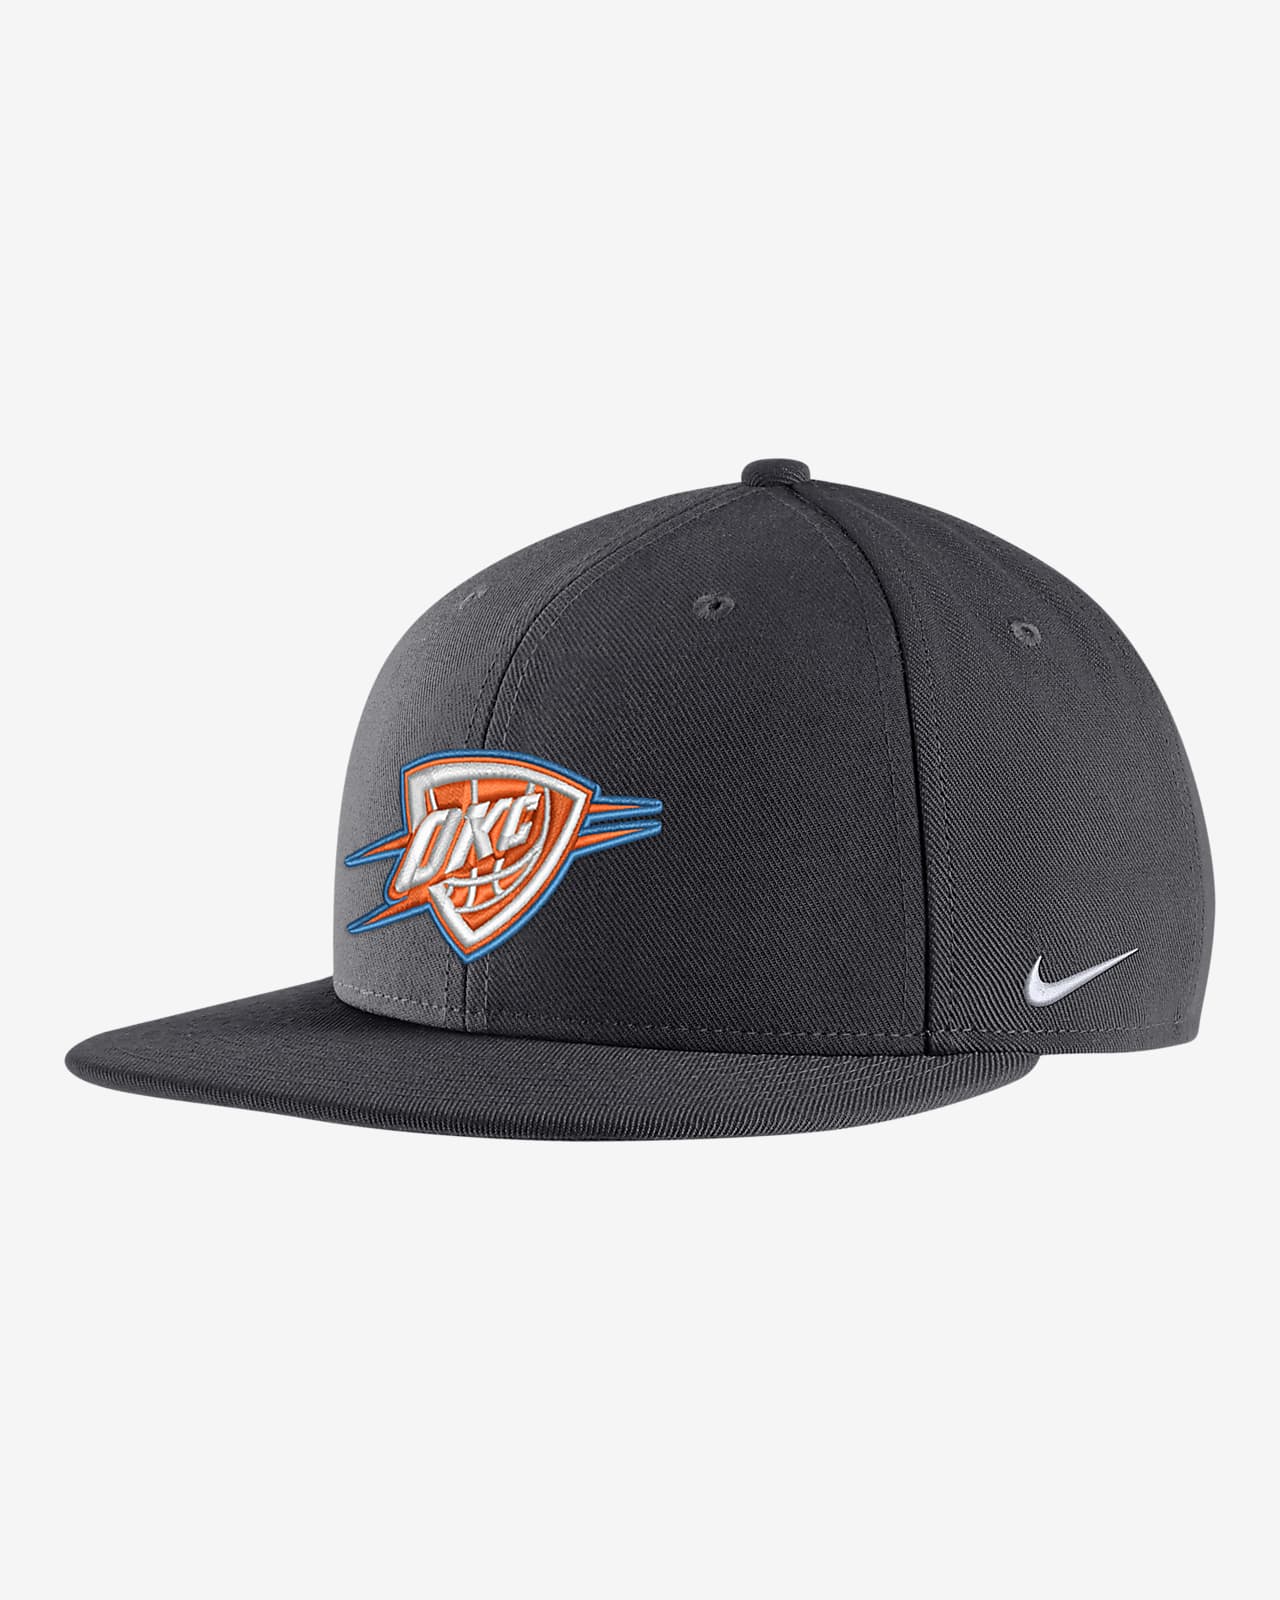 Oklahoma City Thunder City Edition Nike NBA Snapback Hat